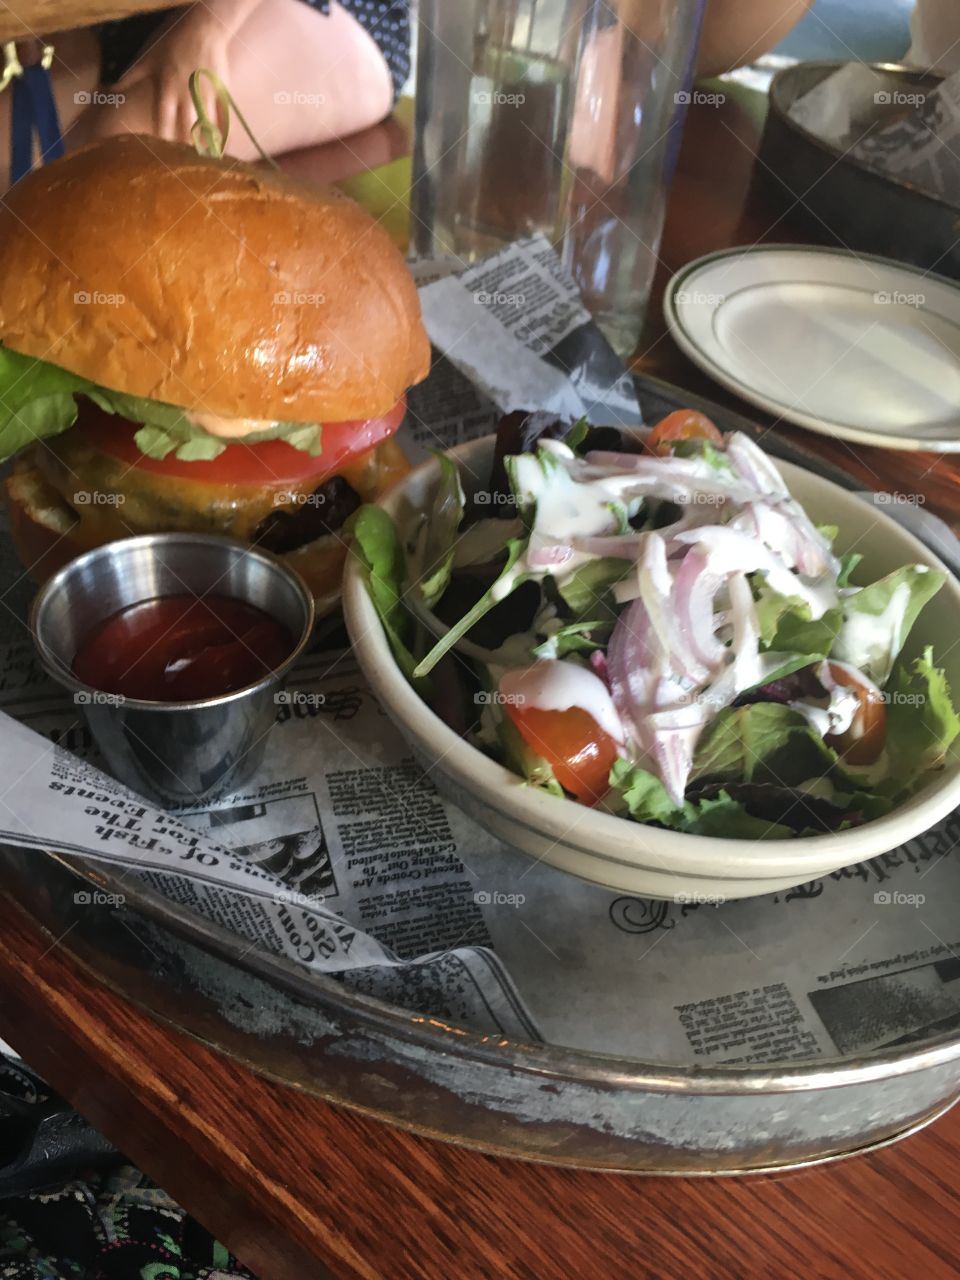 Hamburger and salad! NYC 